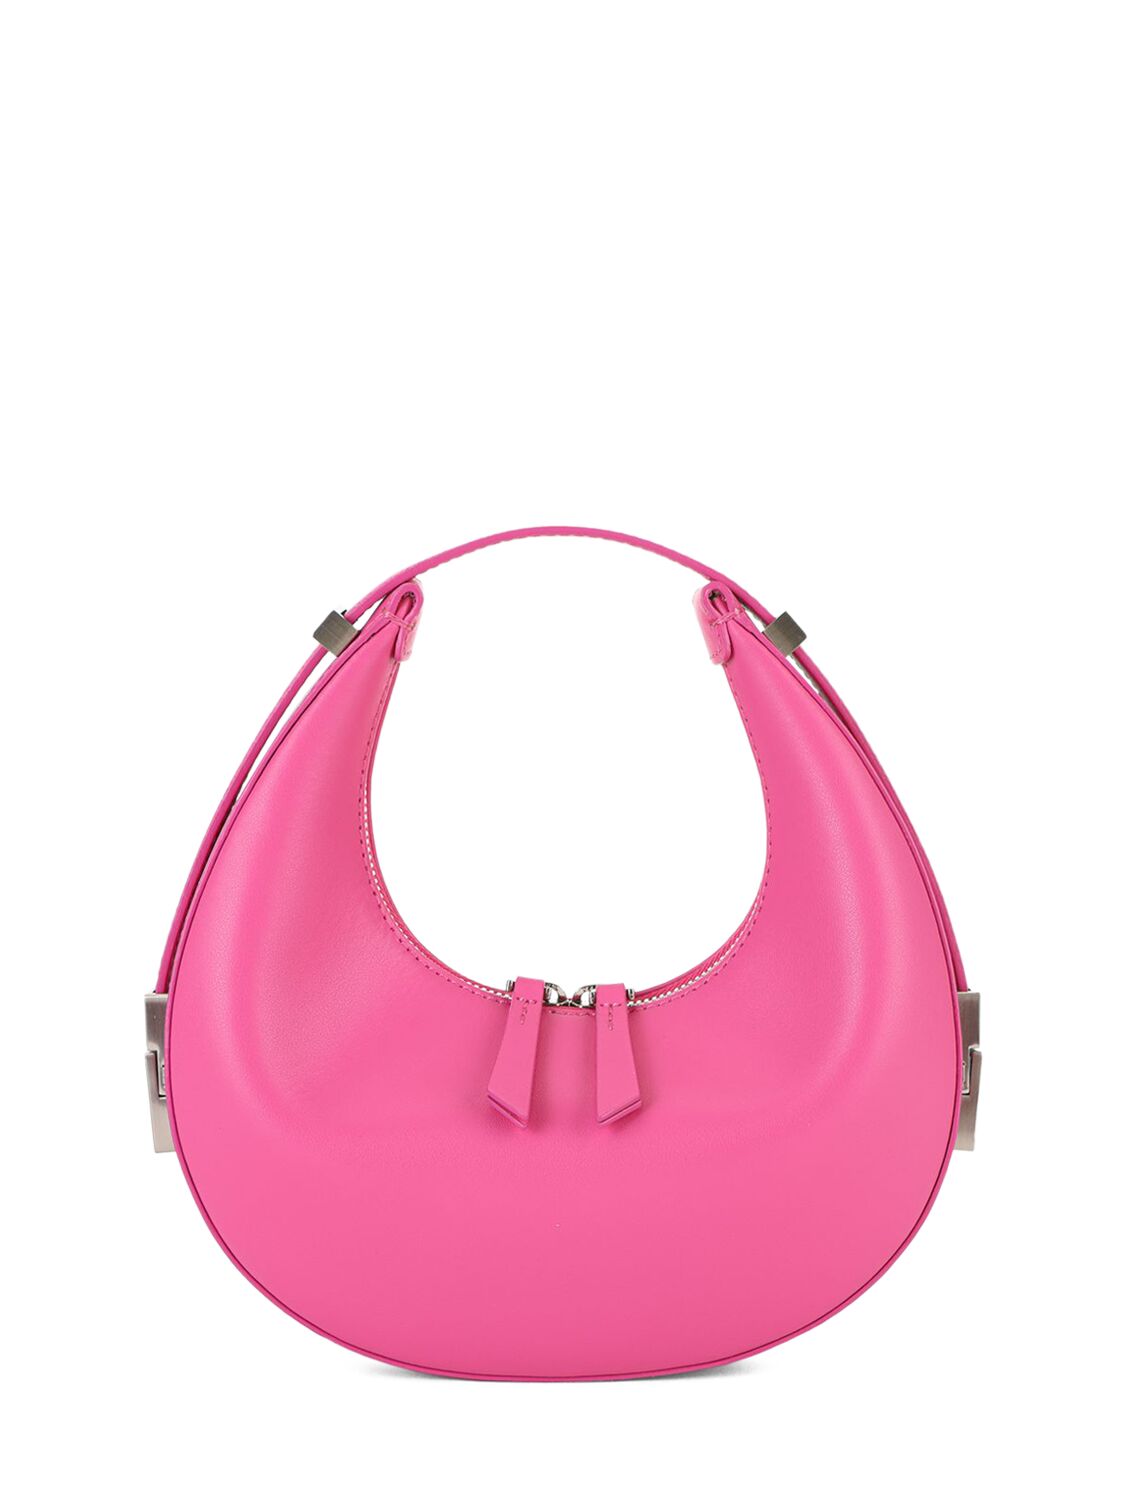 Osoi Mini Toni Leather Top Handle Bag In Barbie Pink